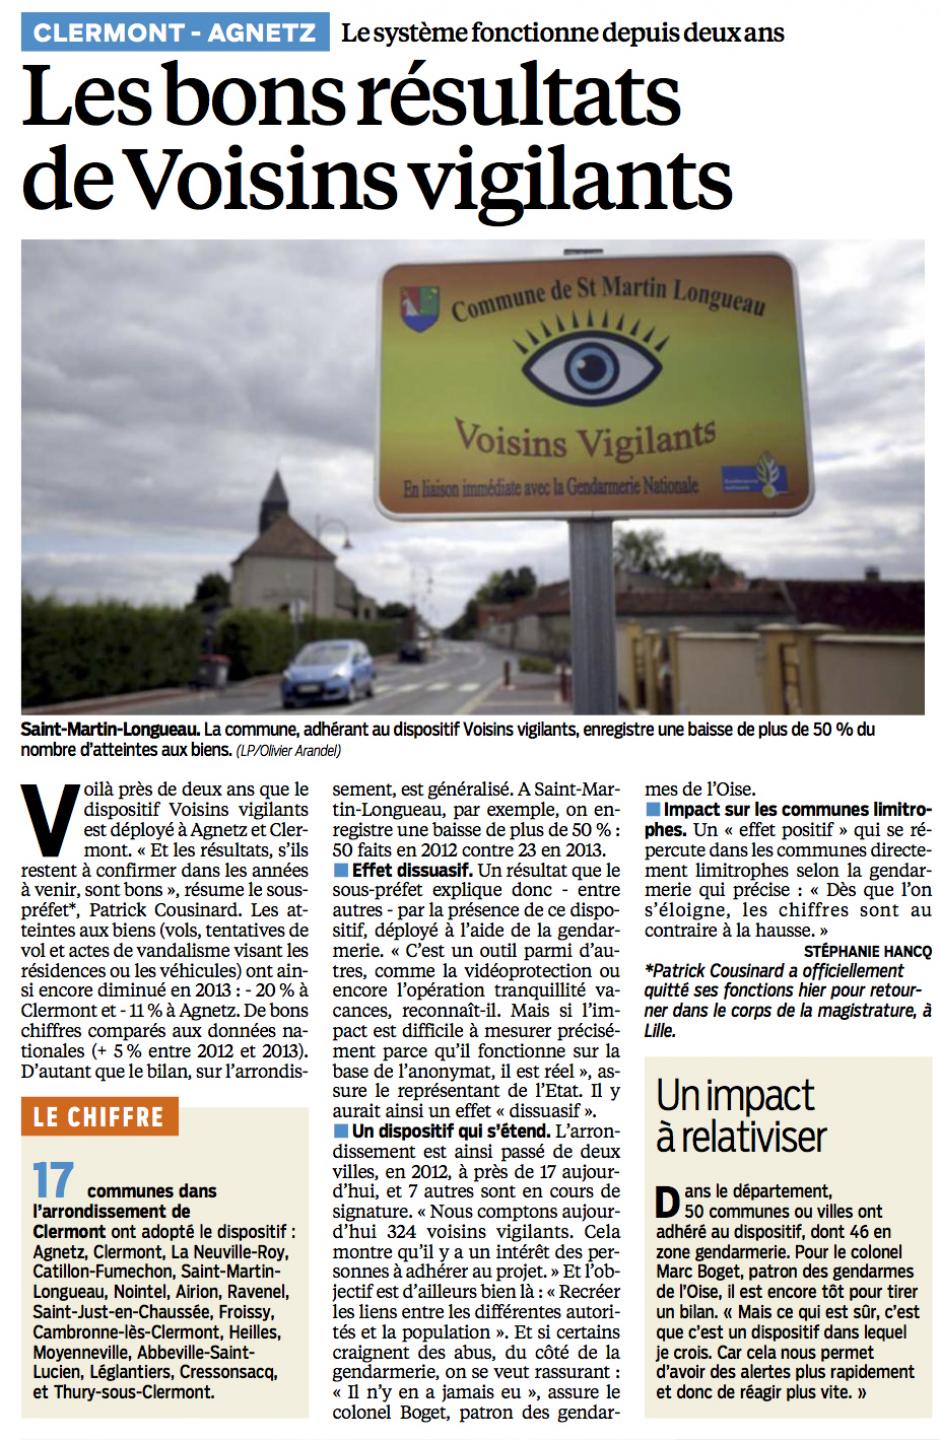 20140111-LeP-Clermont-Agnetz-Les bons résultats de Voisins vigilants